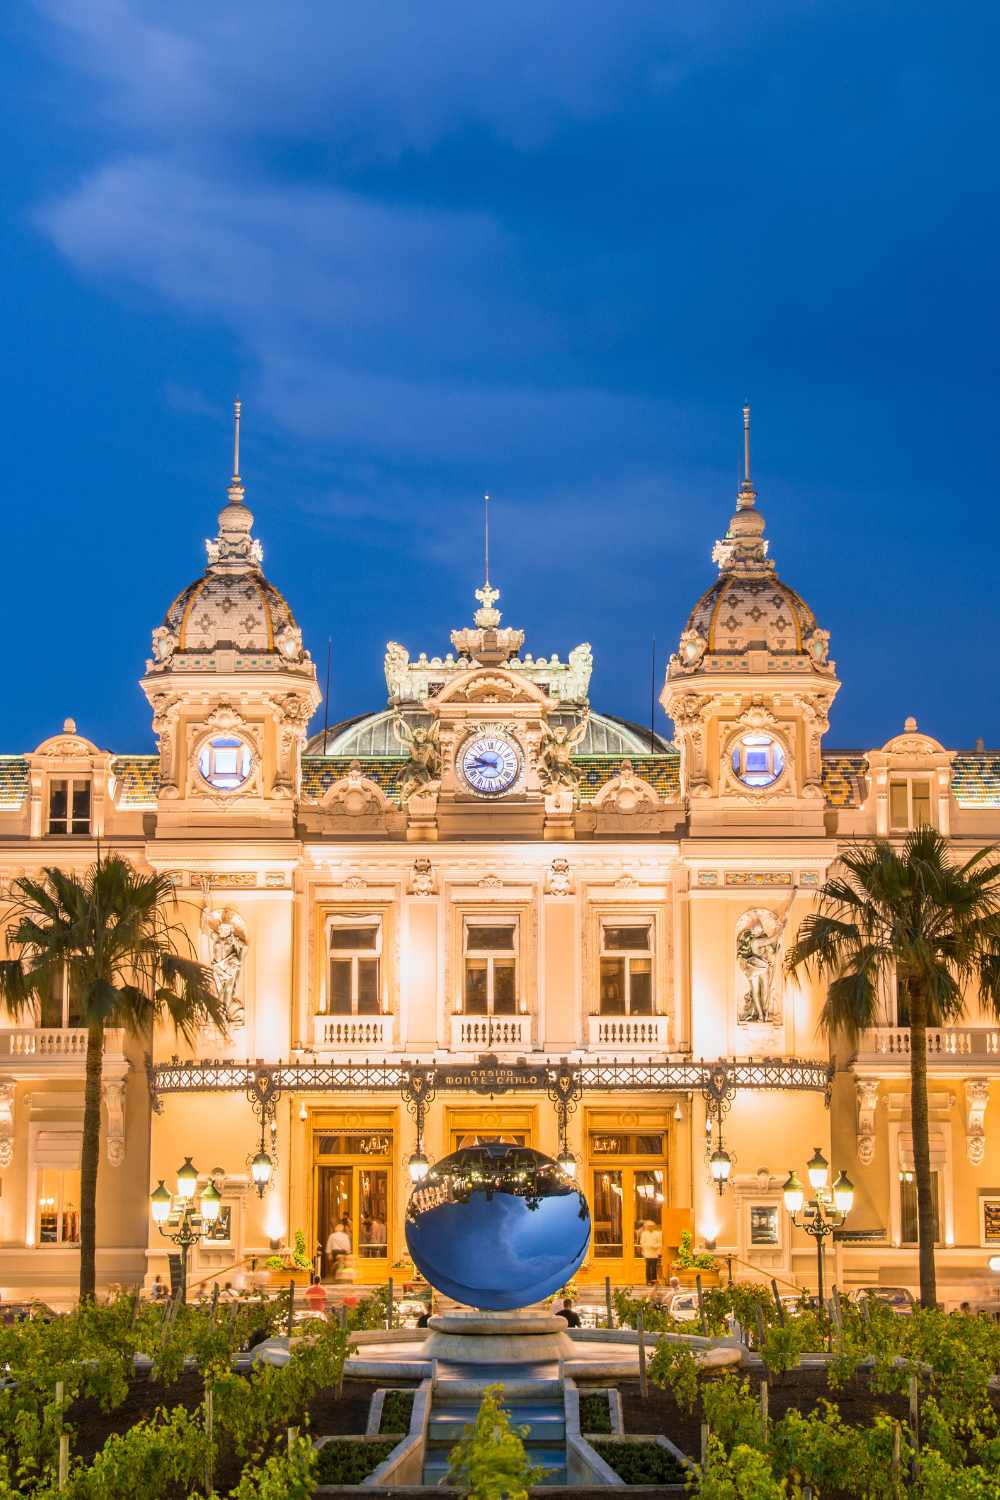 Casino de Monte-Carlo, Monaco, Casino getaways